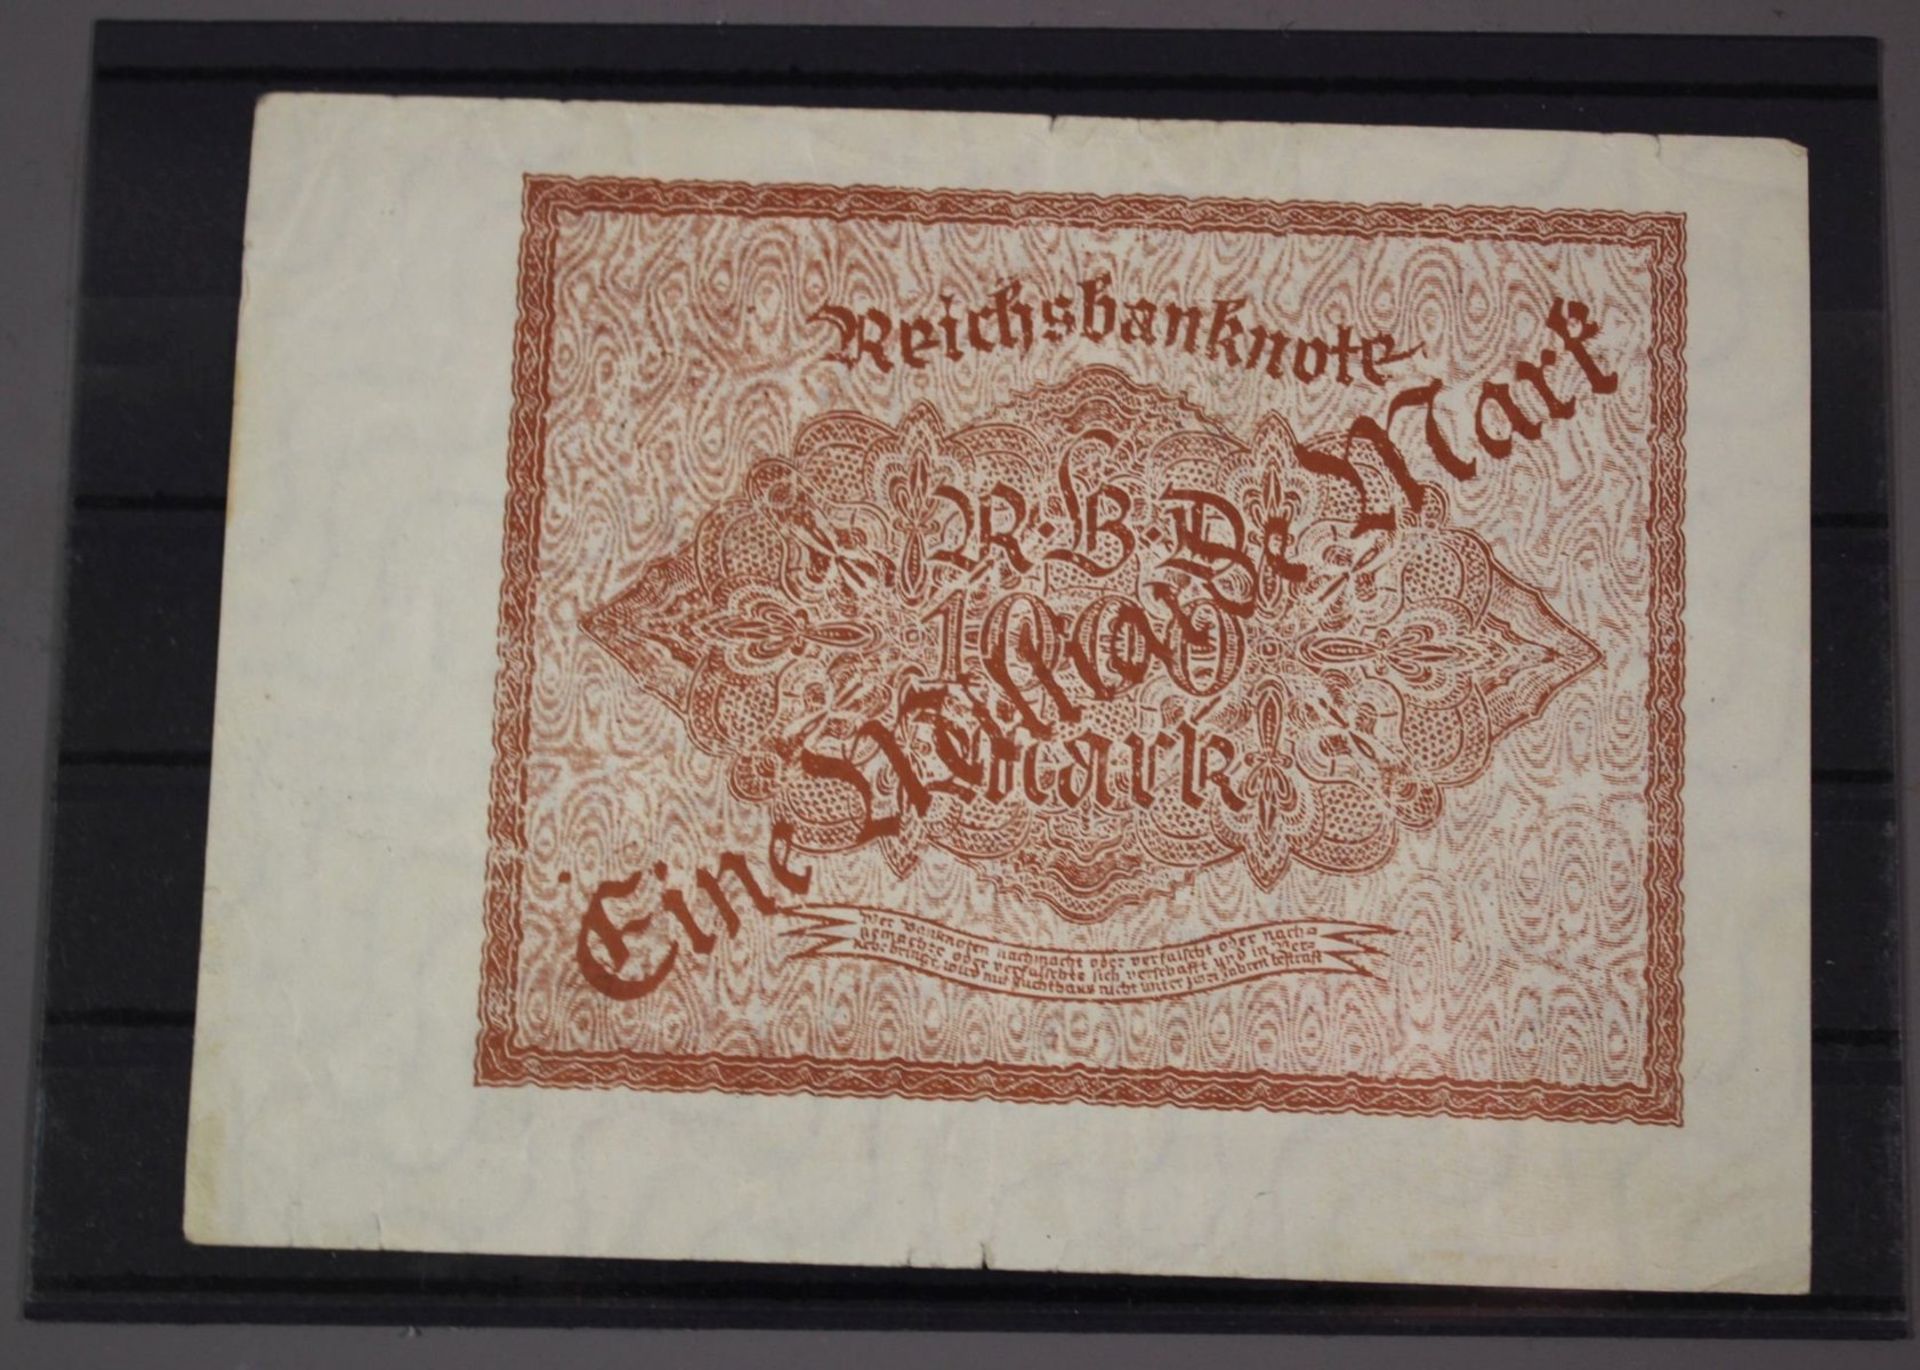 Reichsbanknote 1 Milliarde Mark, Probedruck?. - Image 2 of 2